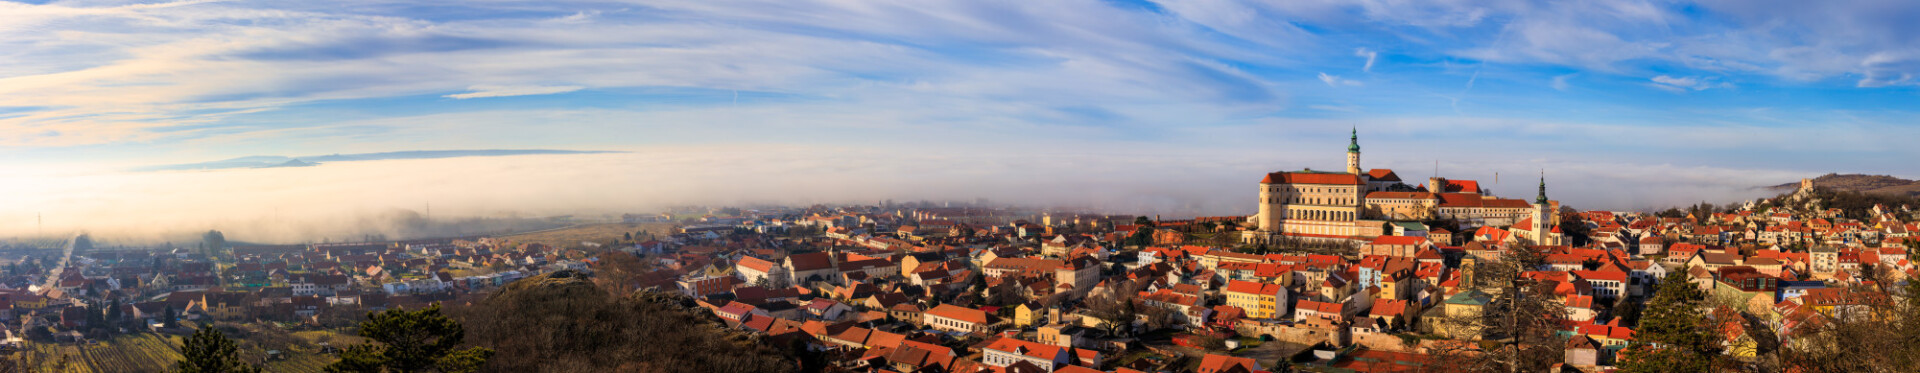 Mikulov, Czech Republic - Cityscape Super Panorama